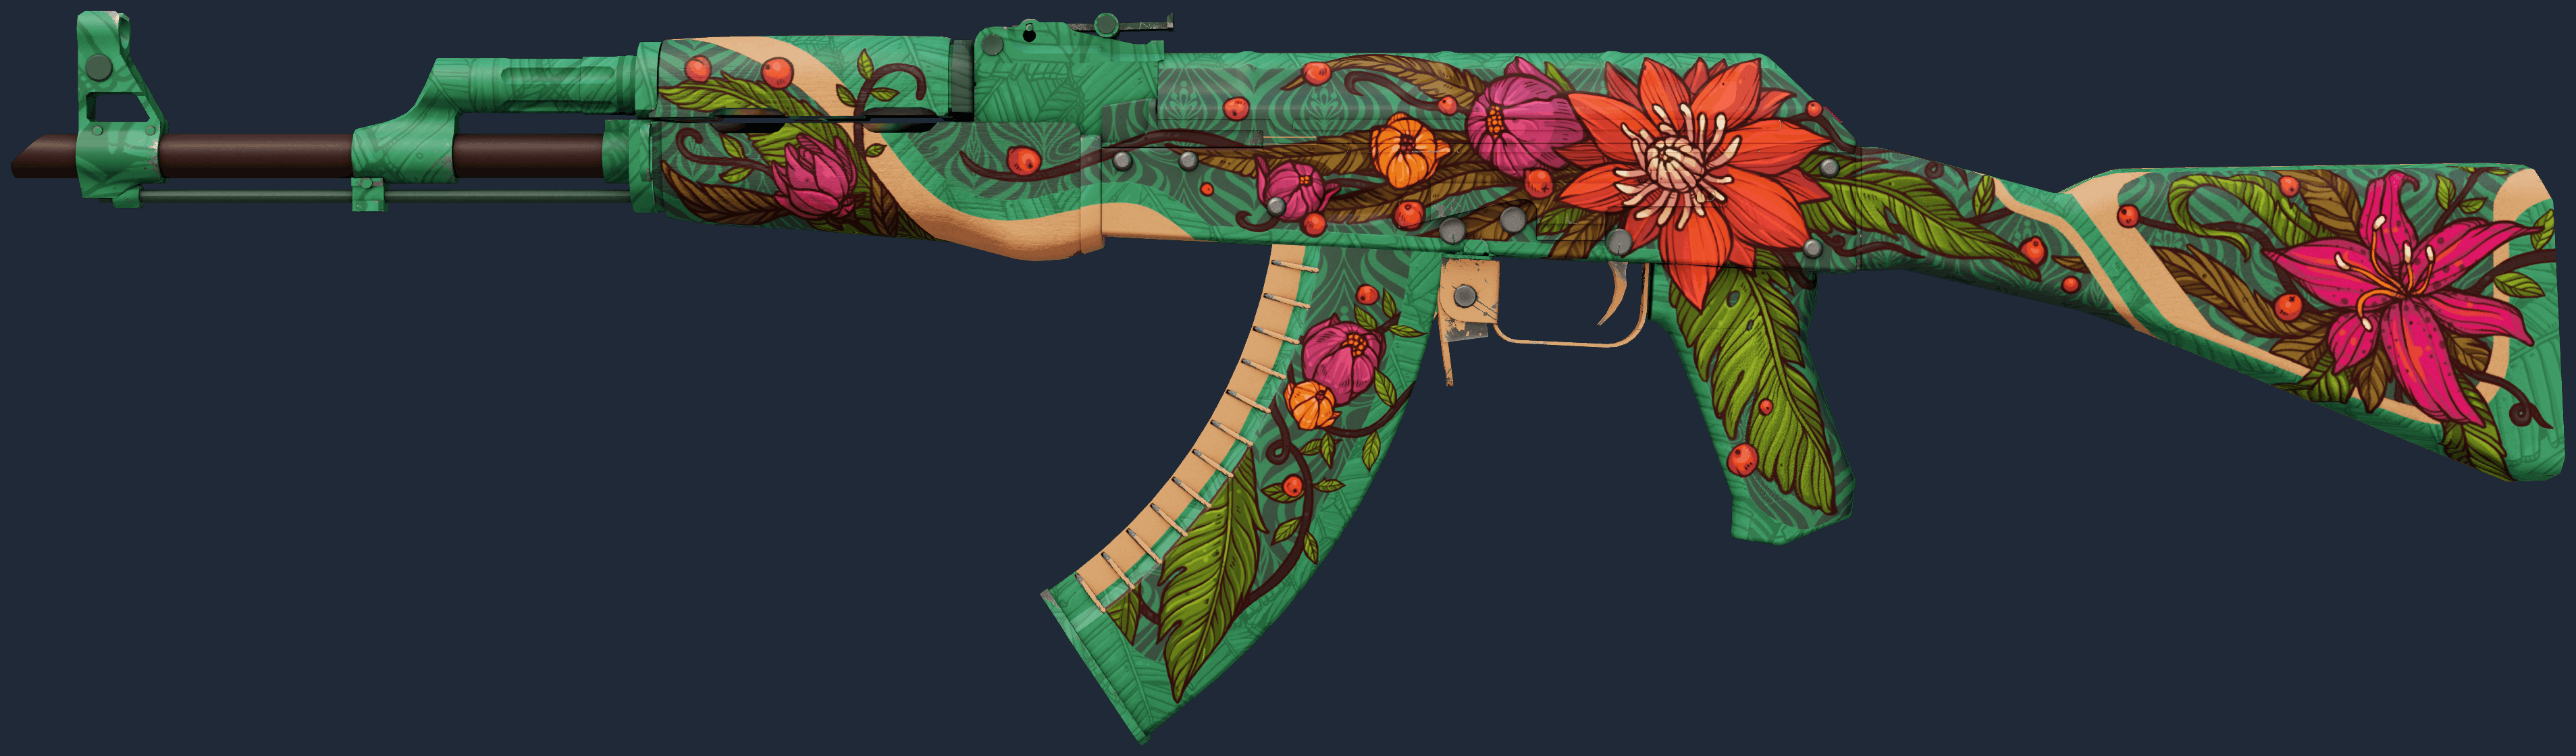 AK-47 | Wild Lotus Screenshot